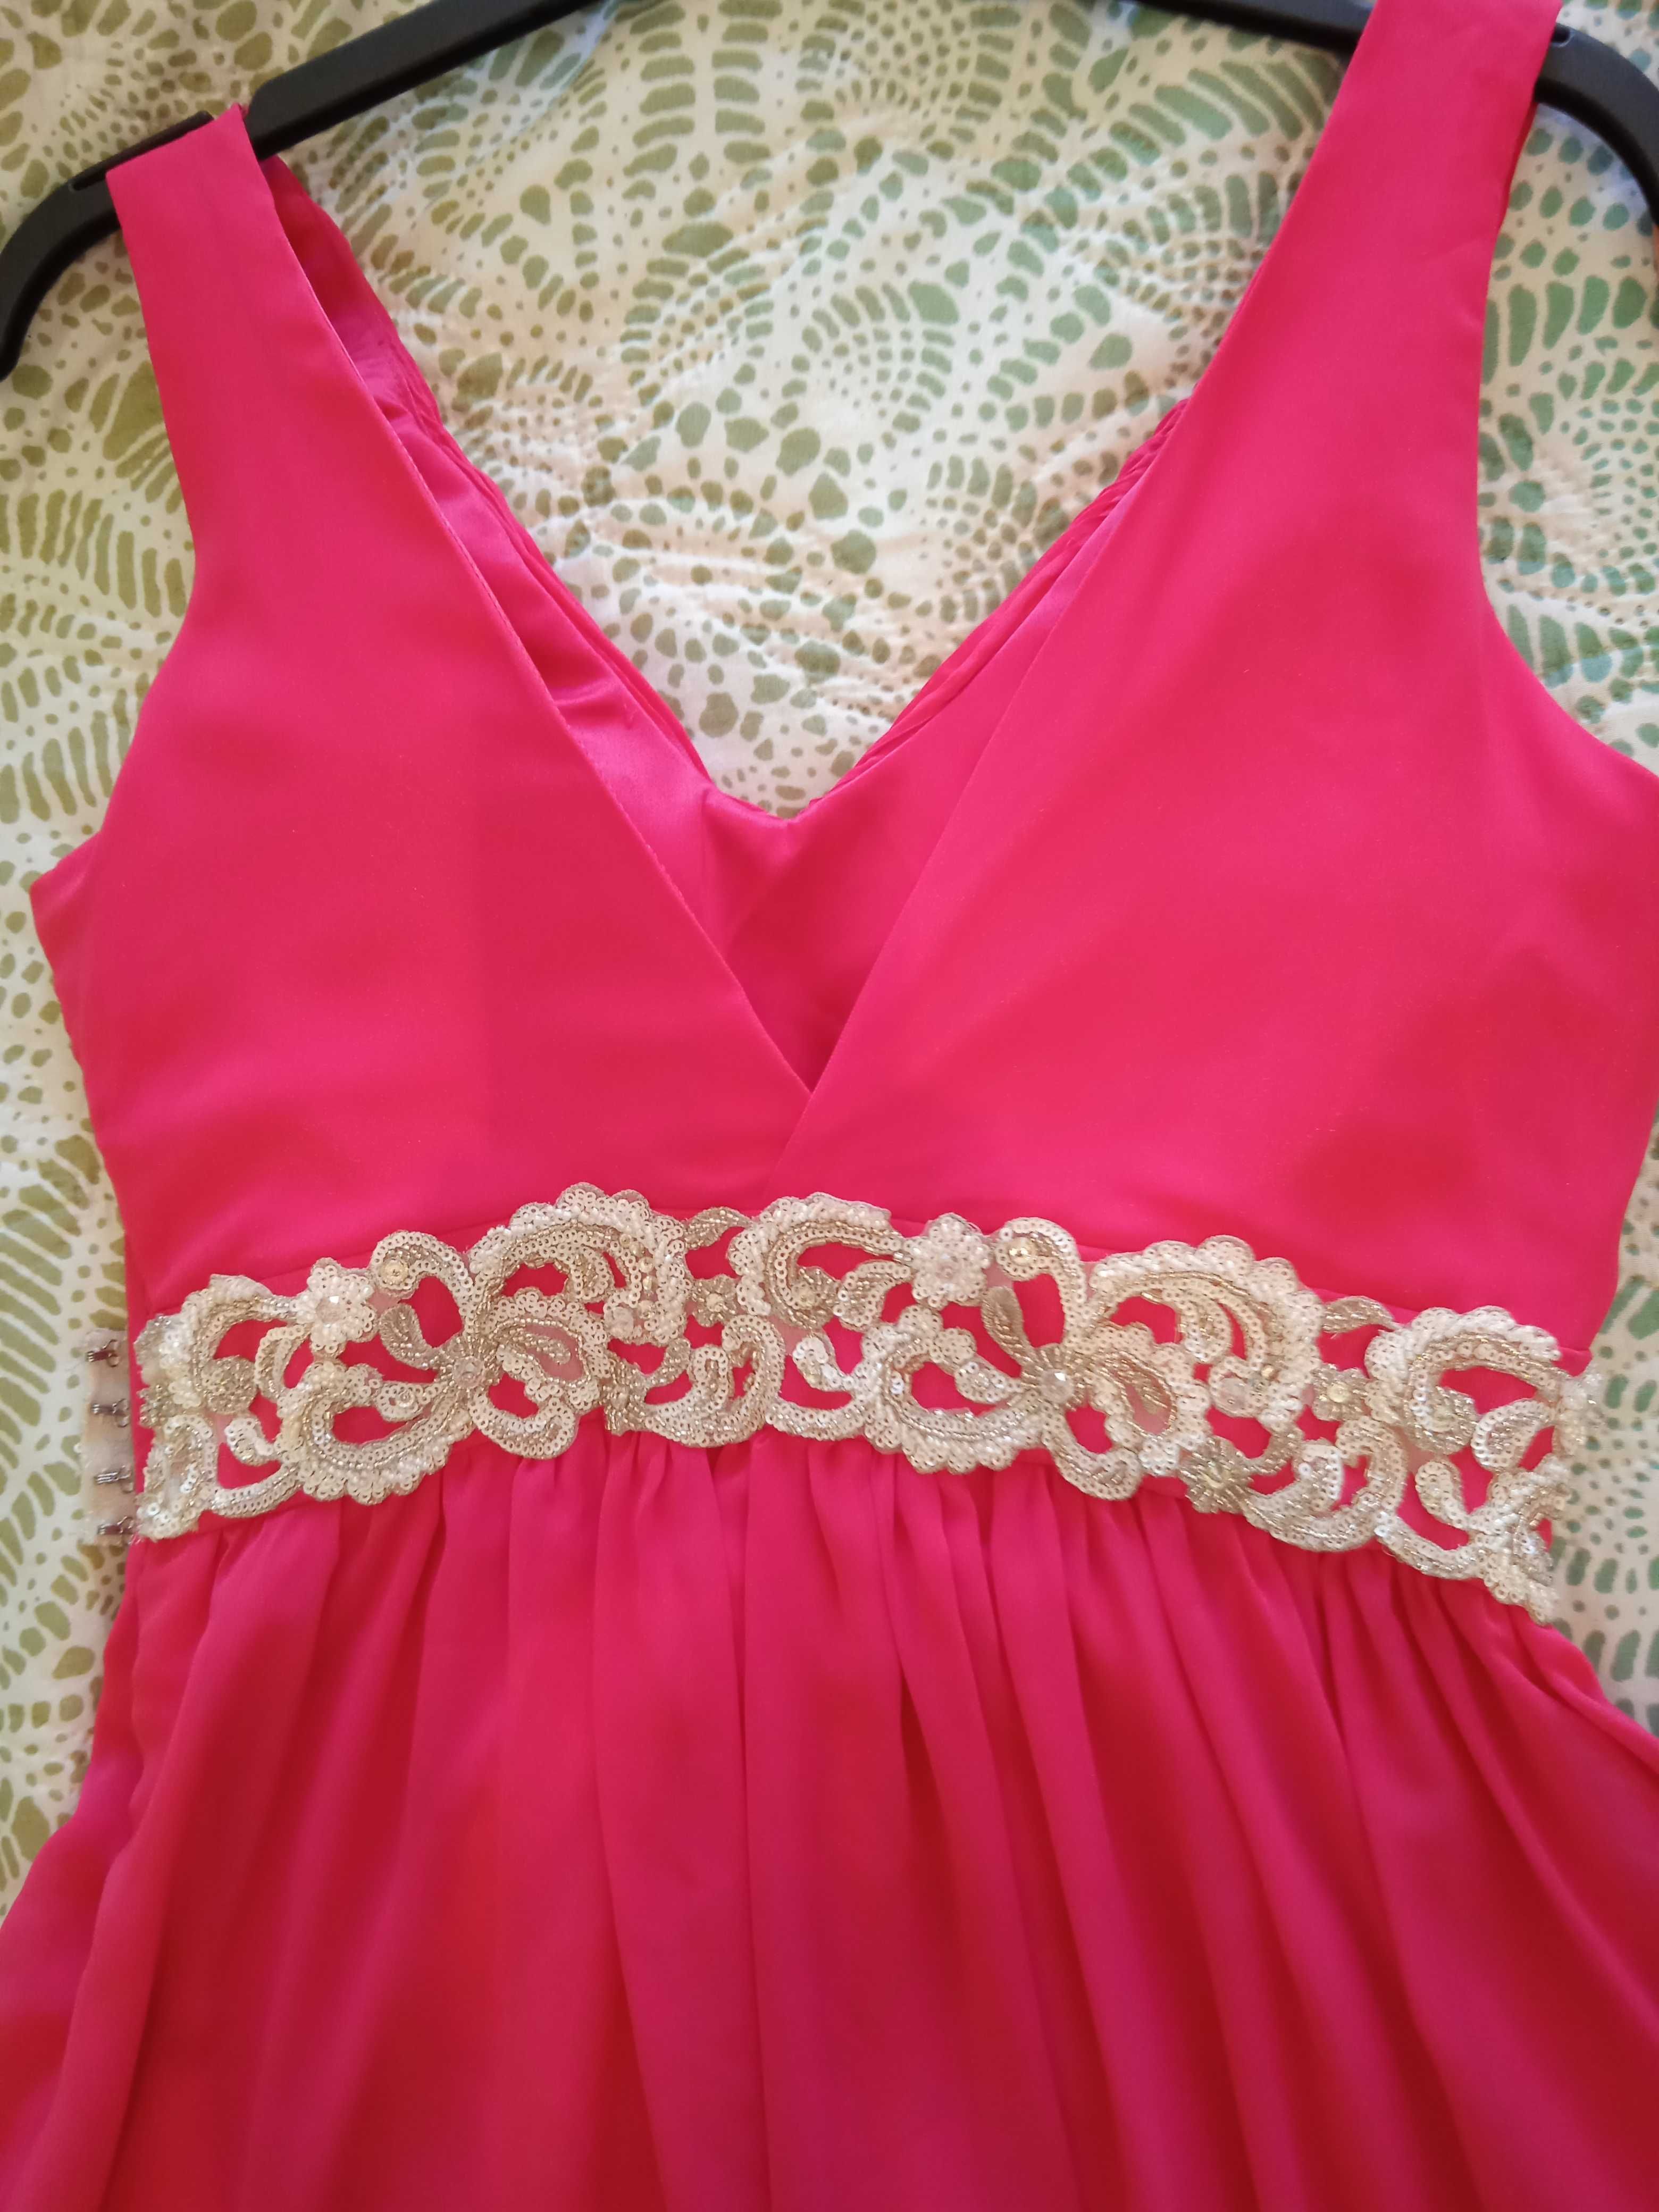 Vestido comprido cerimônia, rosa fúcsia, tamanho S